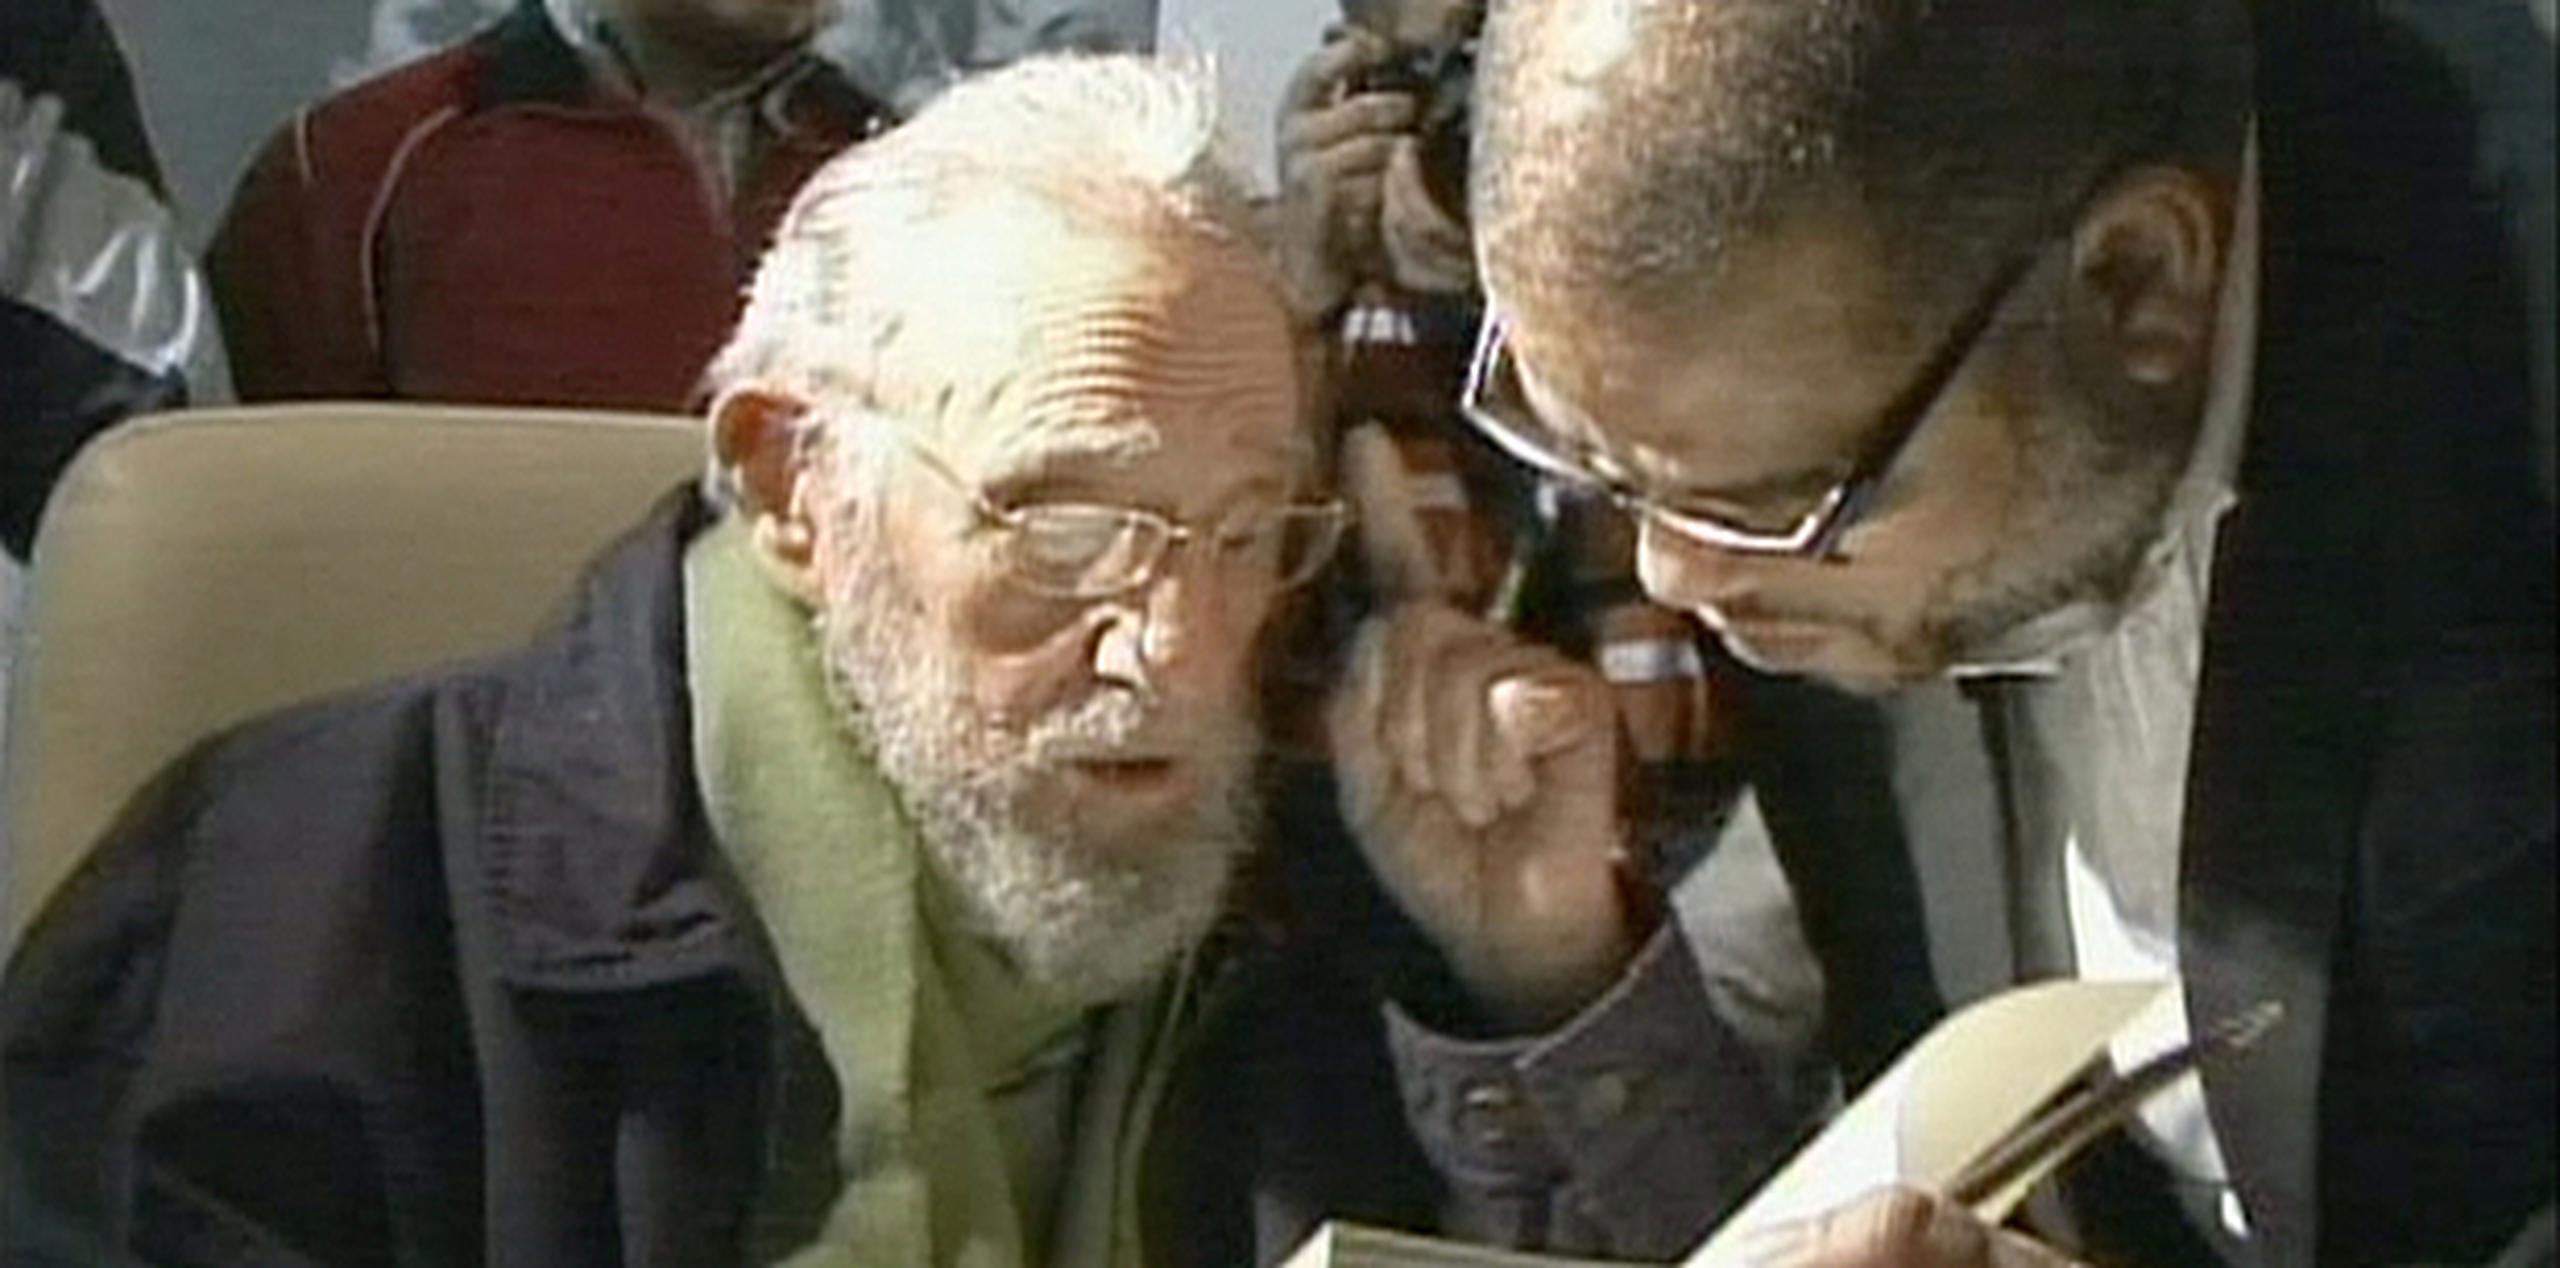 La televisión cubana mostró imágenes del evento en el noticiero del mediodía en el que se ve a Castro vestido con un abrigo azul oscuro y una bufanda verde. (EFE)